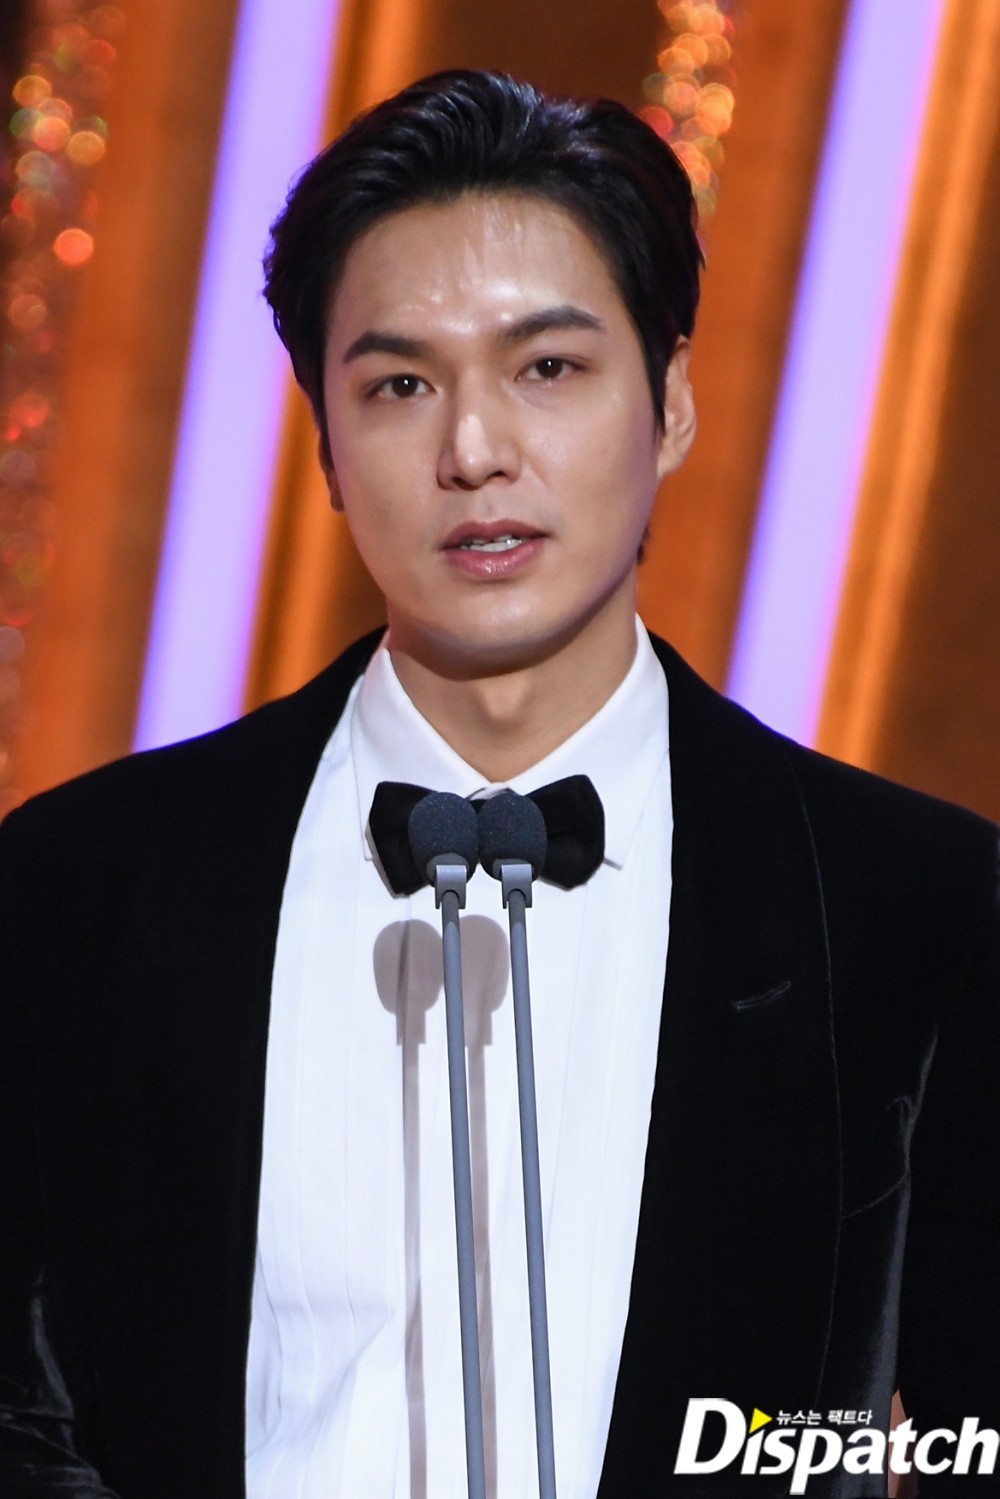 Lee Min Ho bảnh bao đi dự SBS Drama Awards 2020 nhưng lại lộ dấu hiệu lão hóa, khiến dân mạng tranh cãi dữ dội - Ảnh 4.